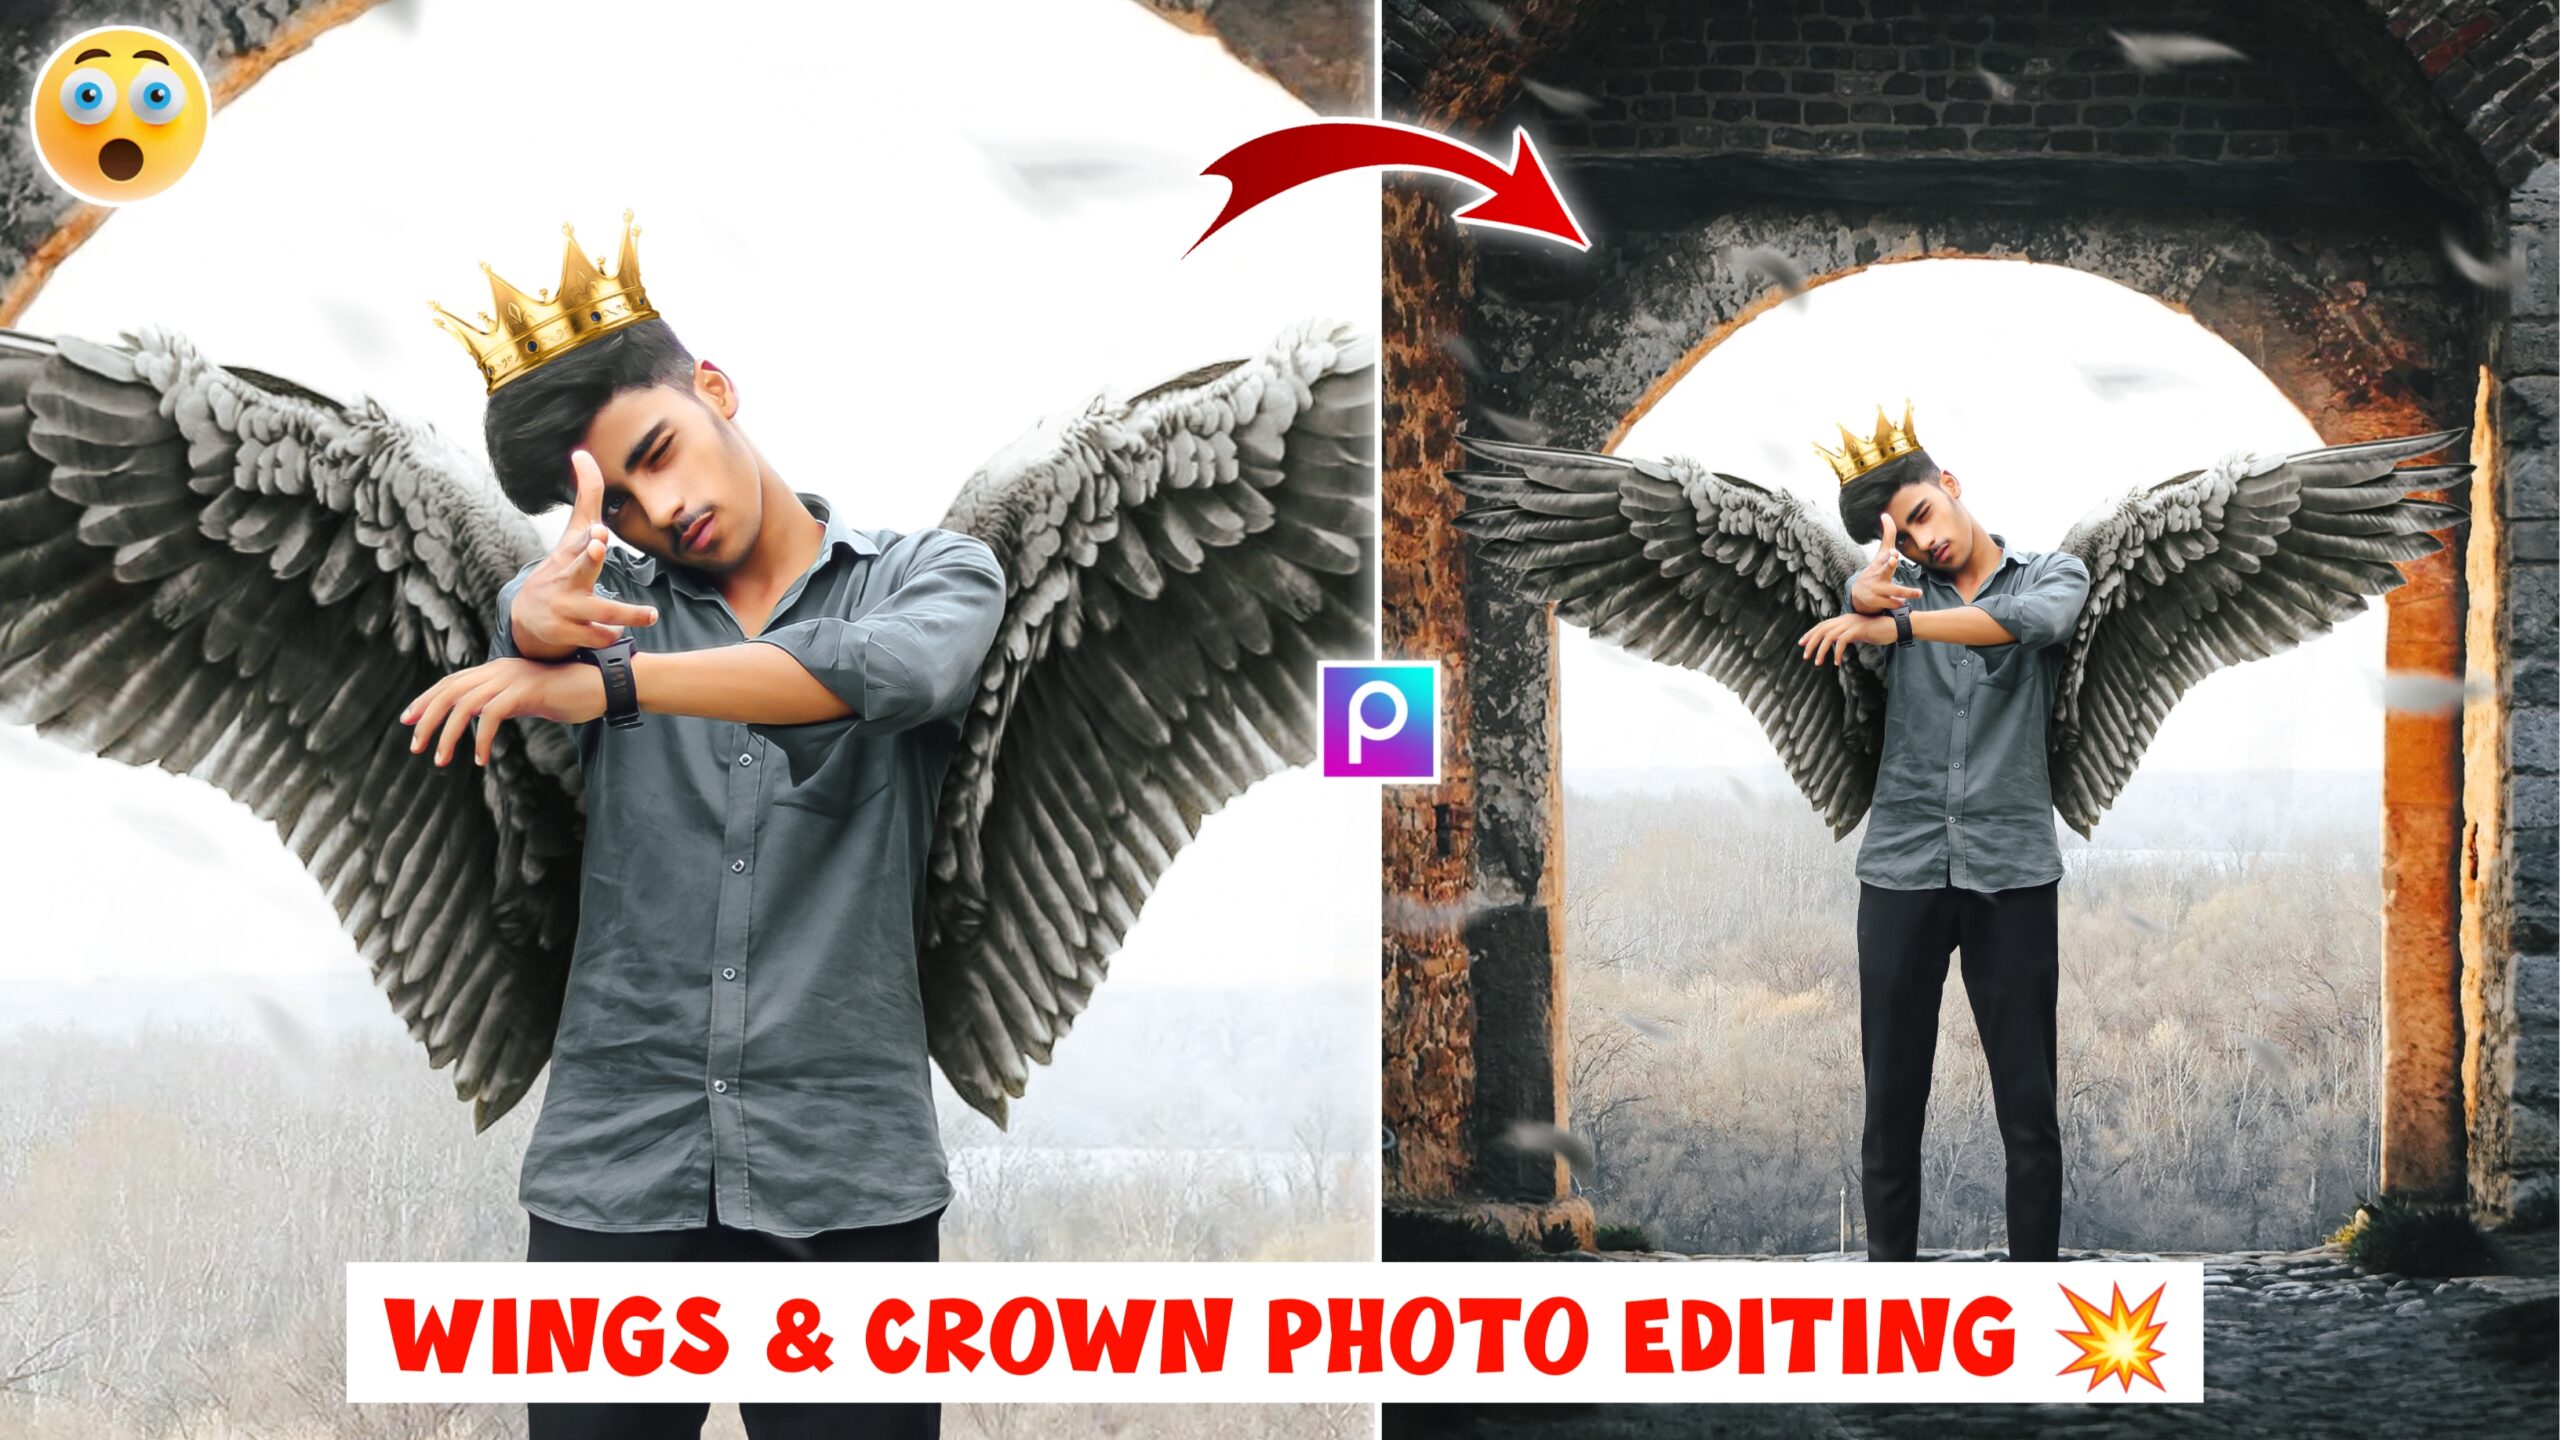 PicsArt Wings & Crown Photo Editing Download Background And PNG - Tahir  Editz